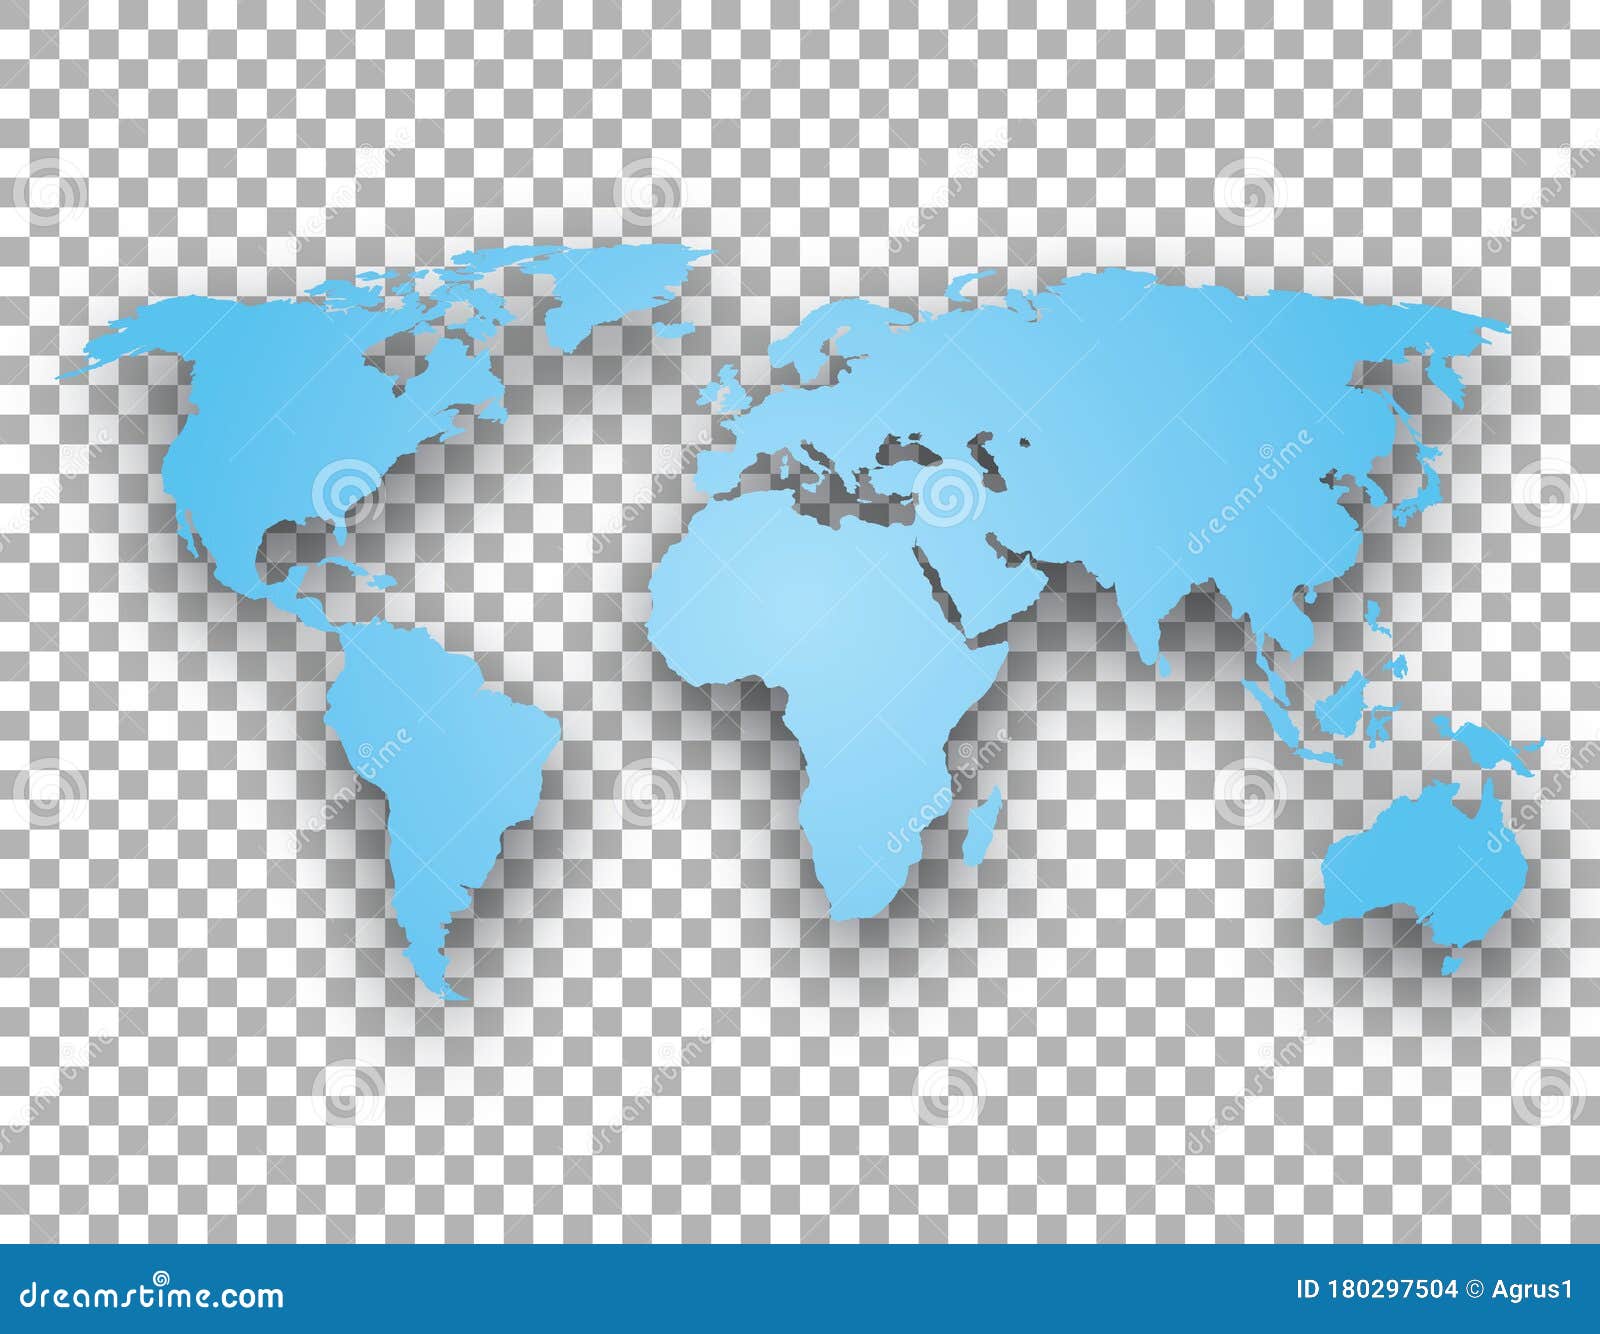 透明背景上的透明世界地图向量例证 插画包括有设计 蓝色 聚会所 透明 要素 国家 地区